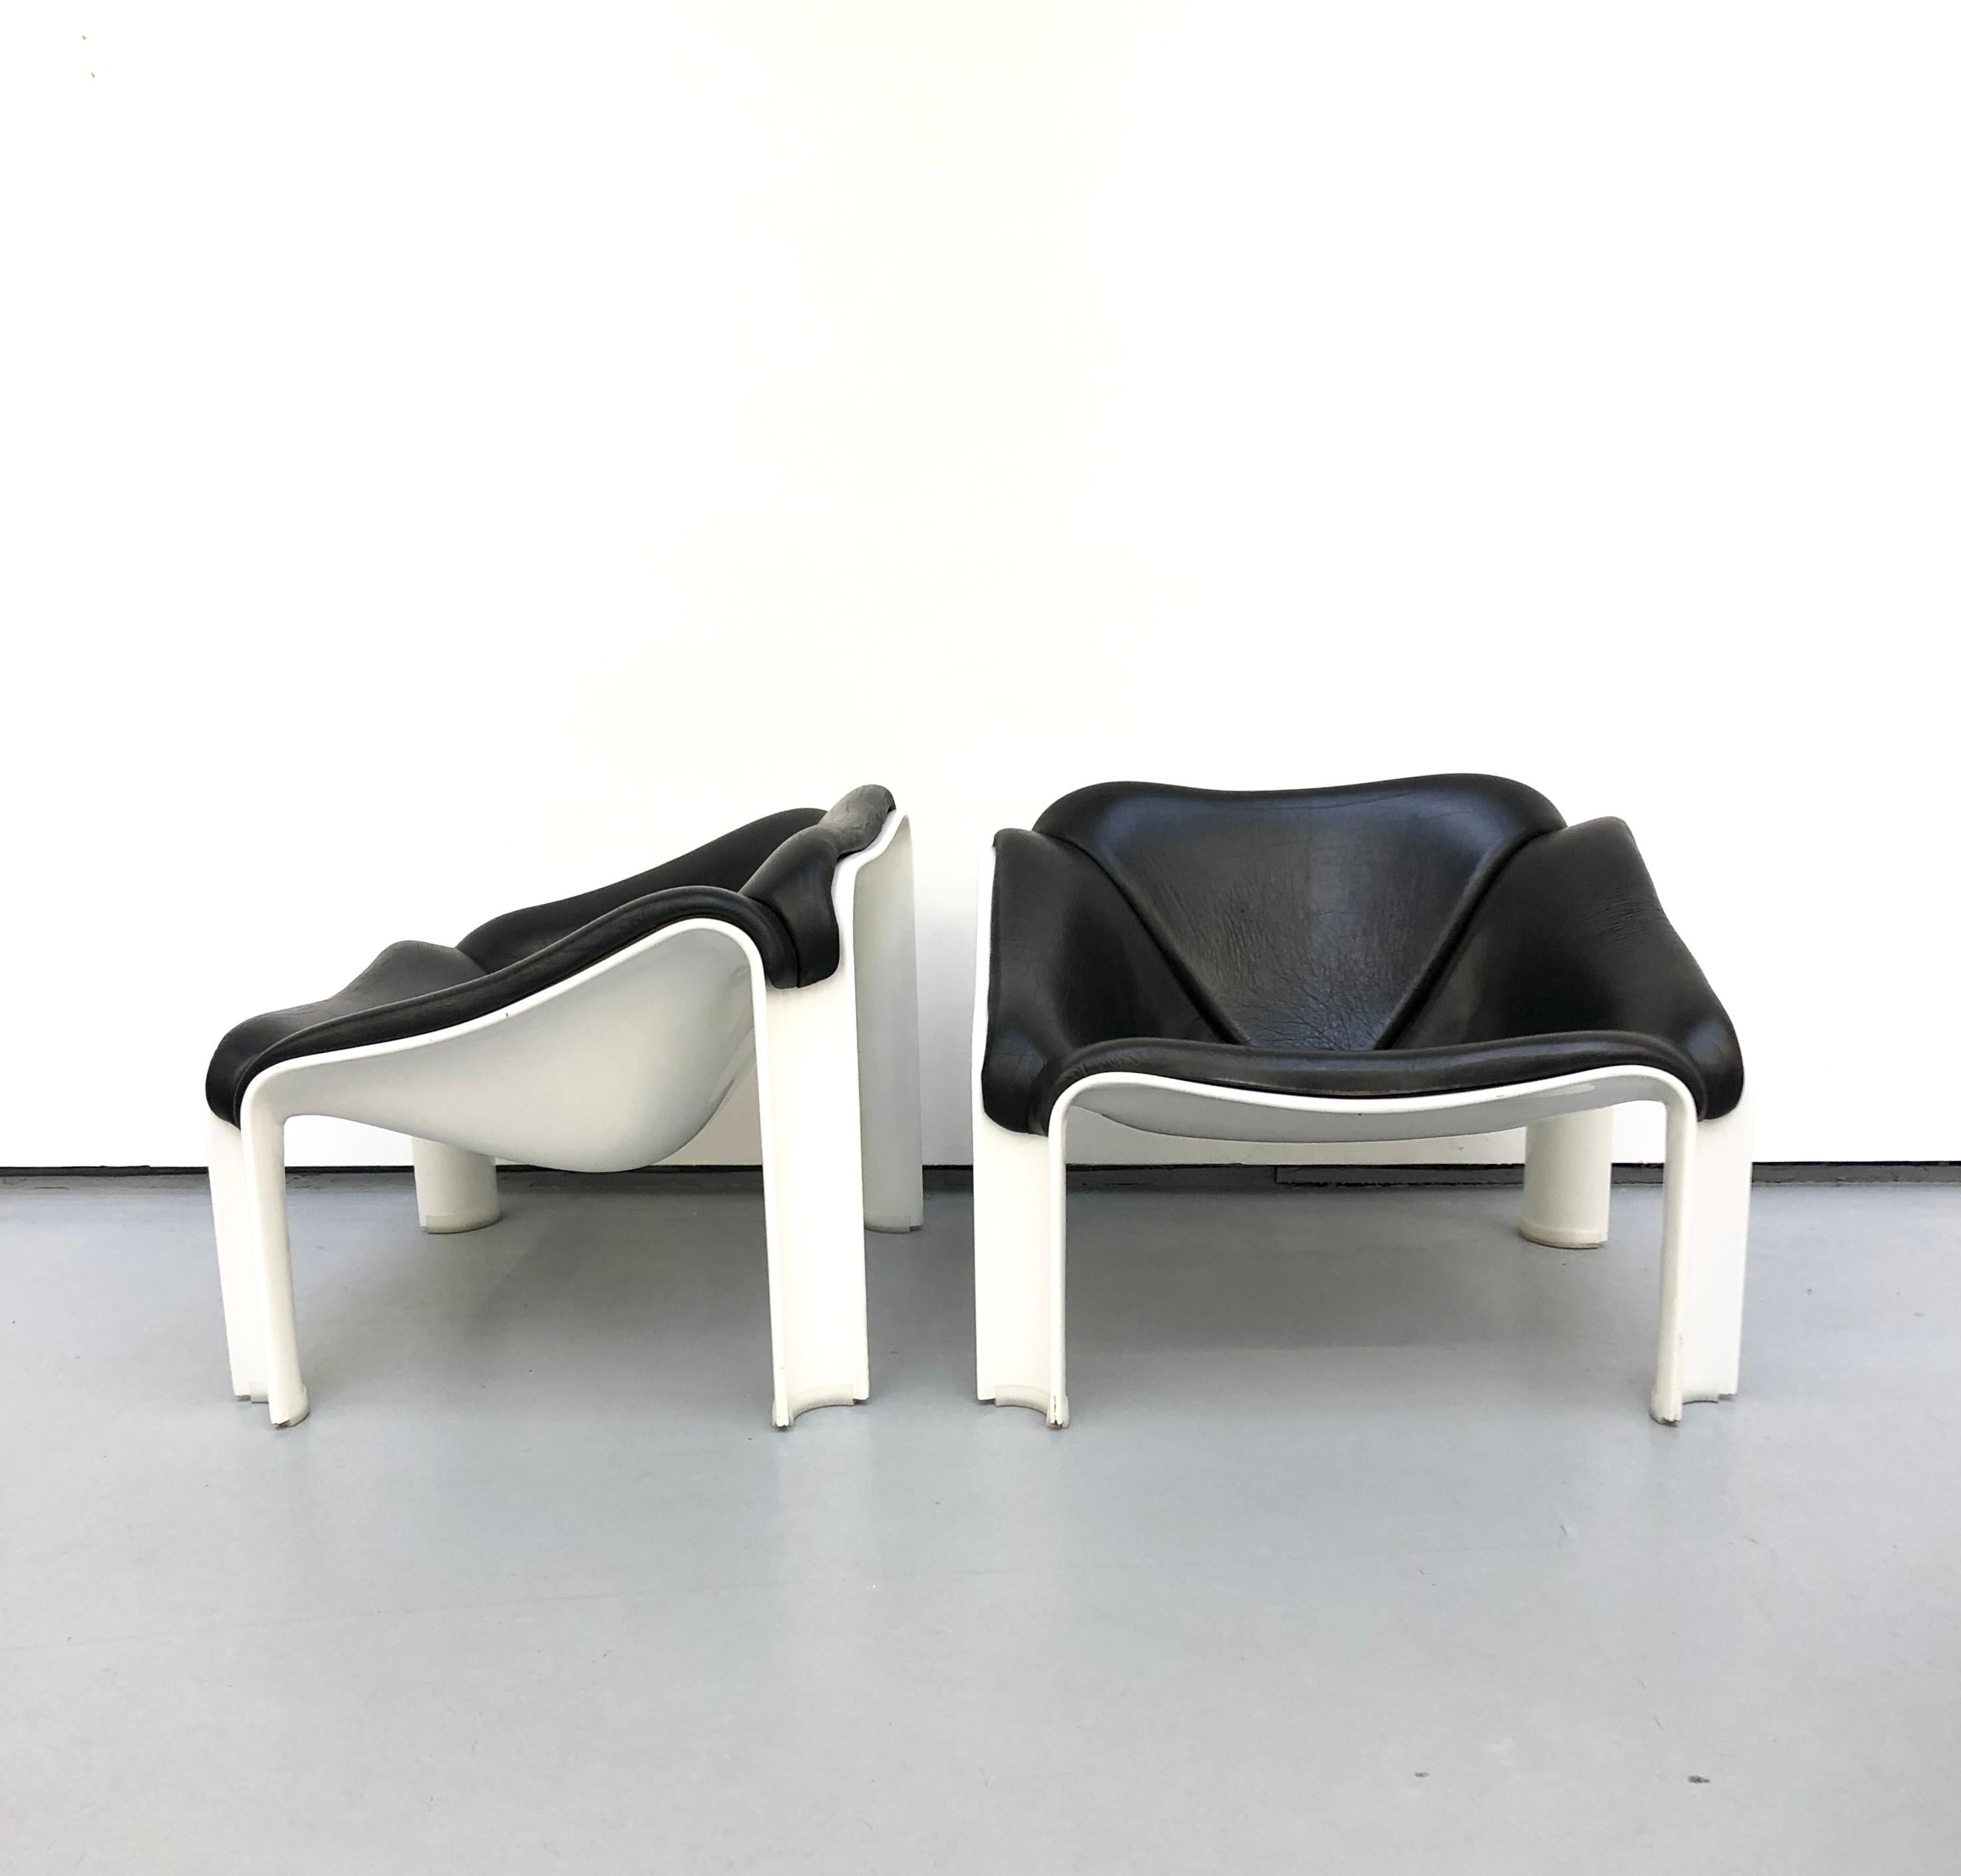 Pierre Paulin a conçu la chaise F300 en 1964 pour Artifort (Pays-Bas). La série F300 de Pierre Paulin est constituée d'une coque en polyuréthane moulé. Les pieds sont protégés par des capuchons en PVC transparent. Cette chaise est dotée d'une coque